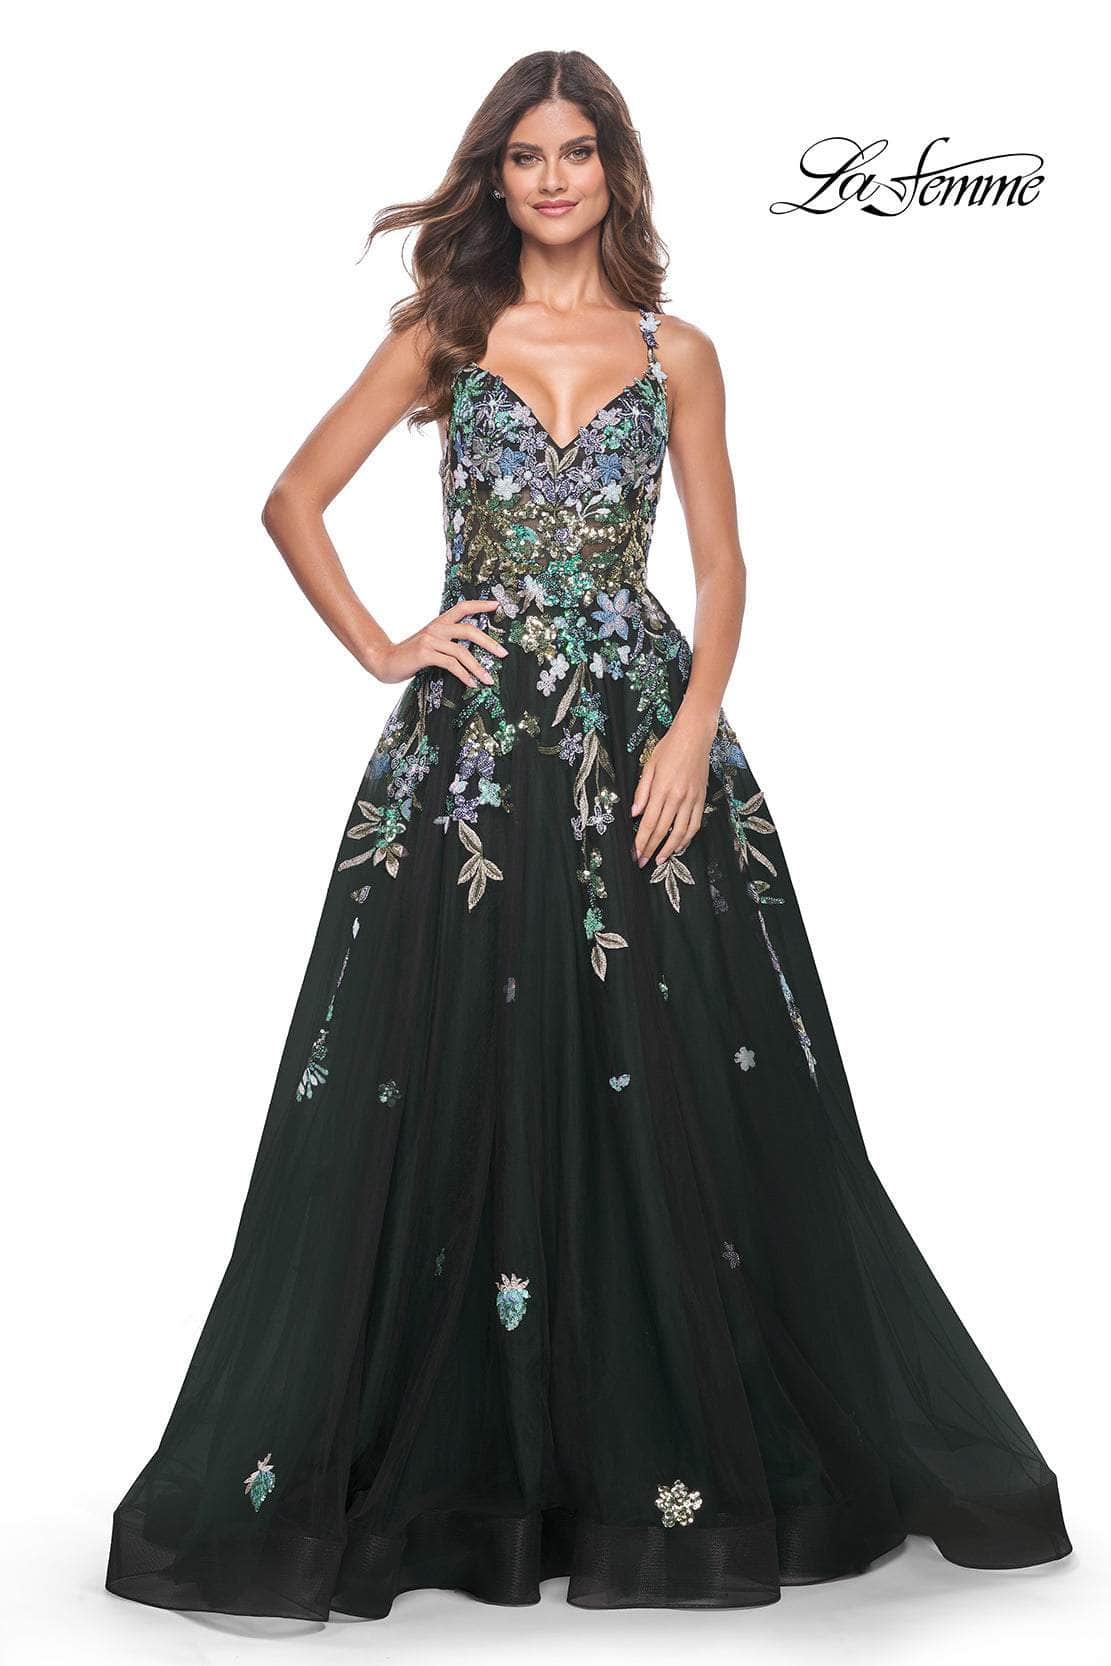 La Femme 32023 - A-Line Floral Appliqued Prom Gown
